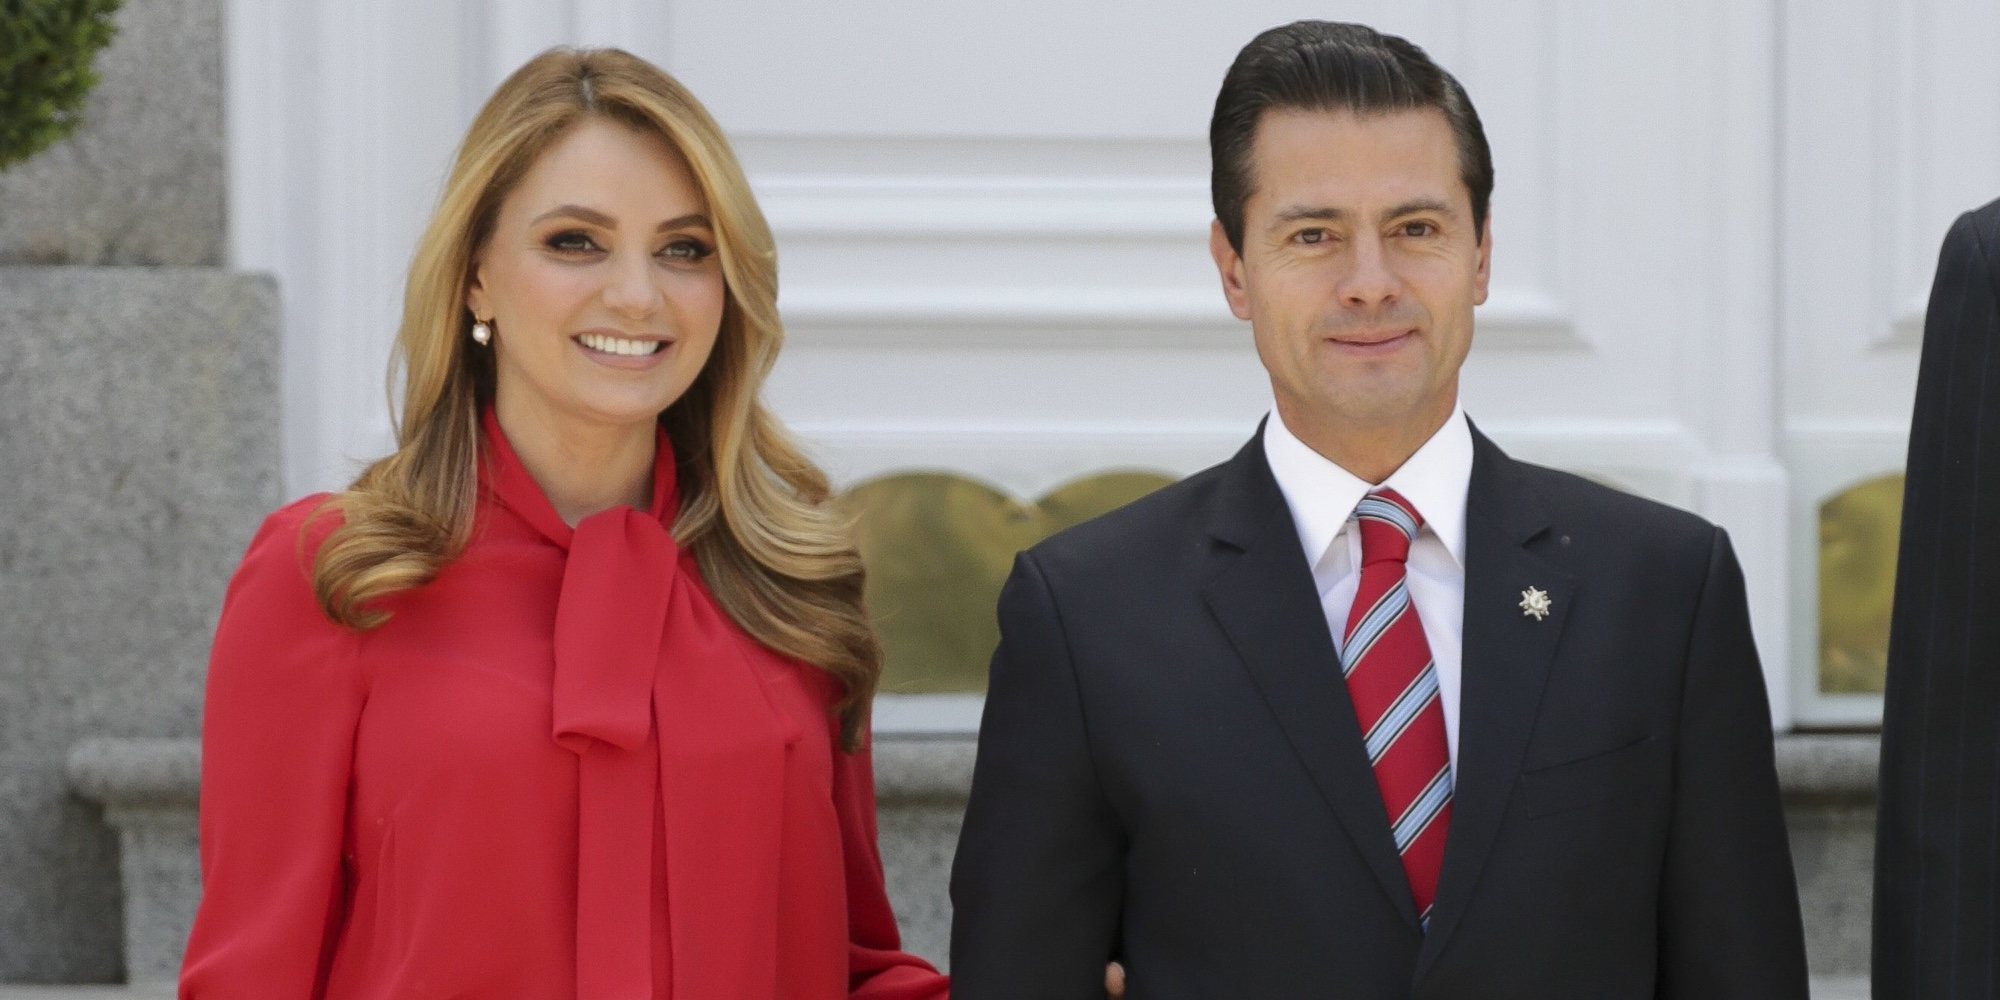 Coches y viajes de avión: así son las exigencias que pide Angelica a Peña Nieto para su divorcio